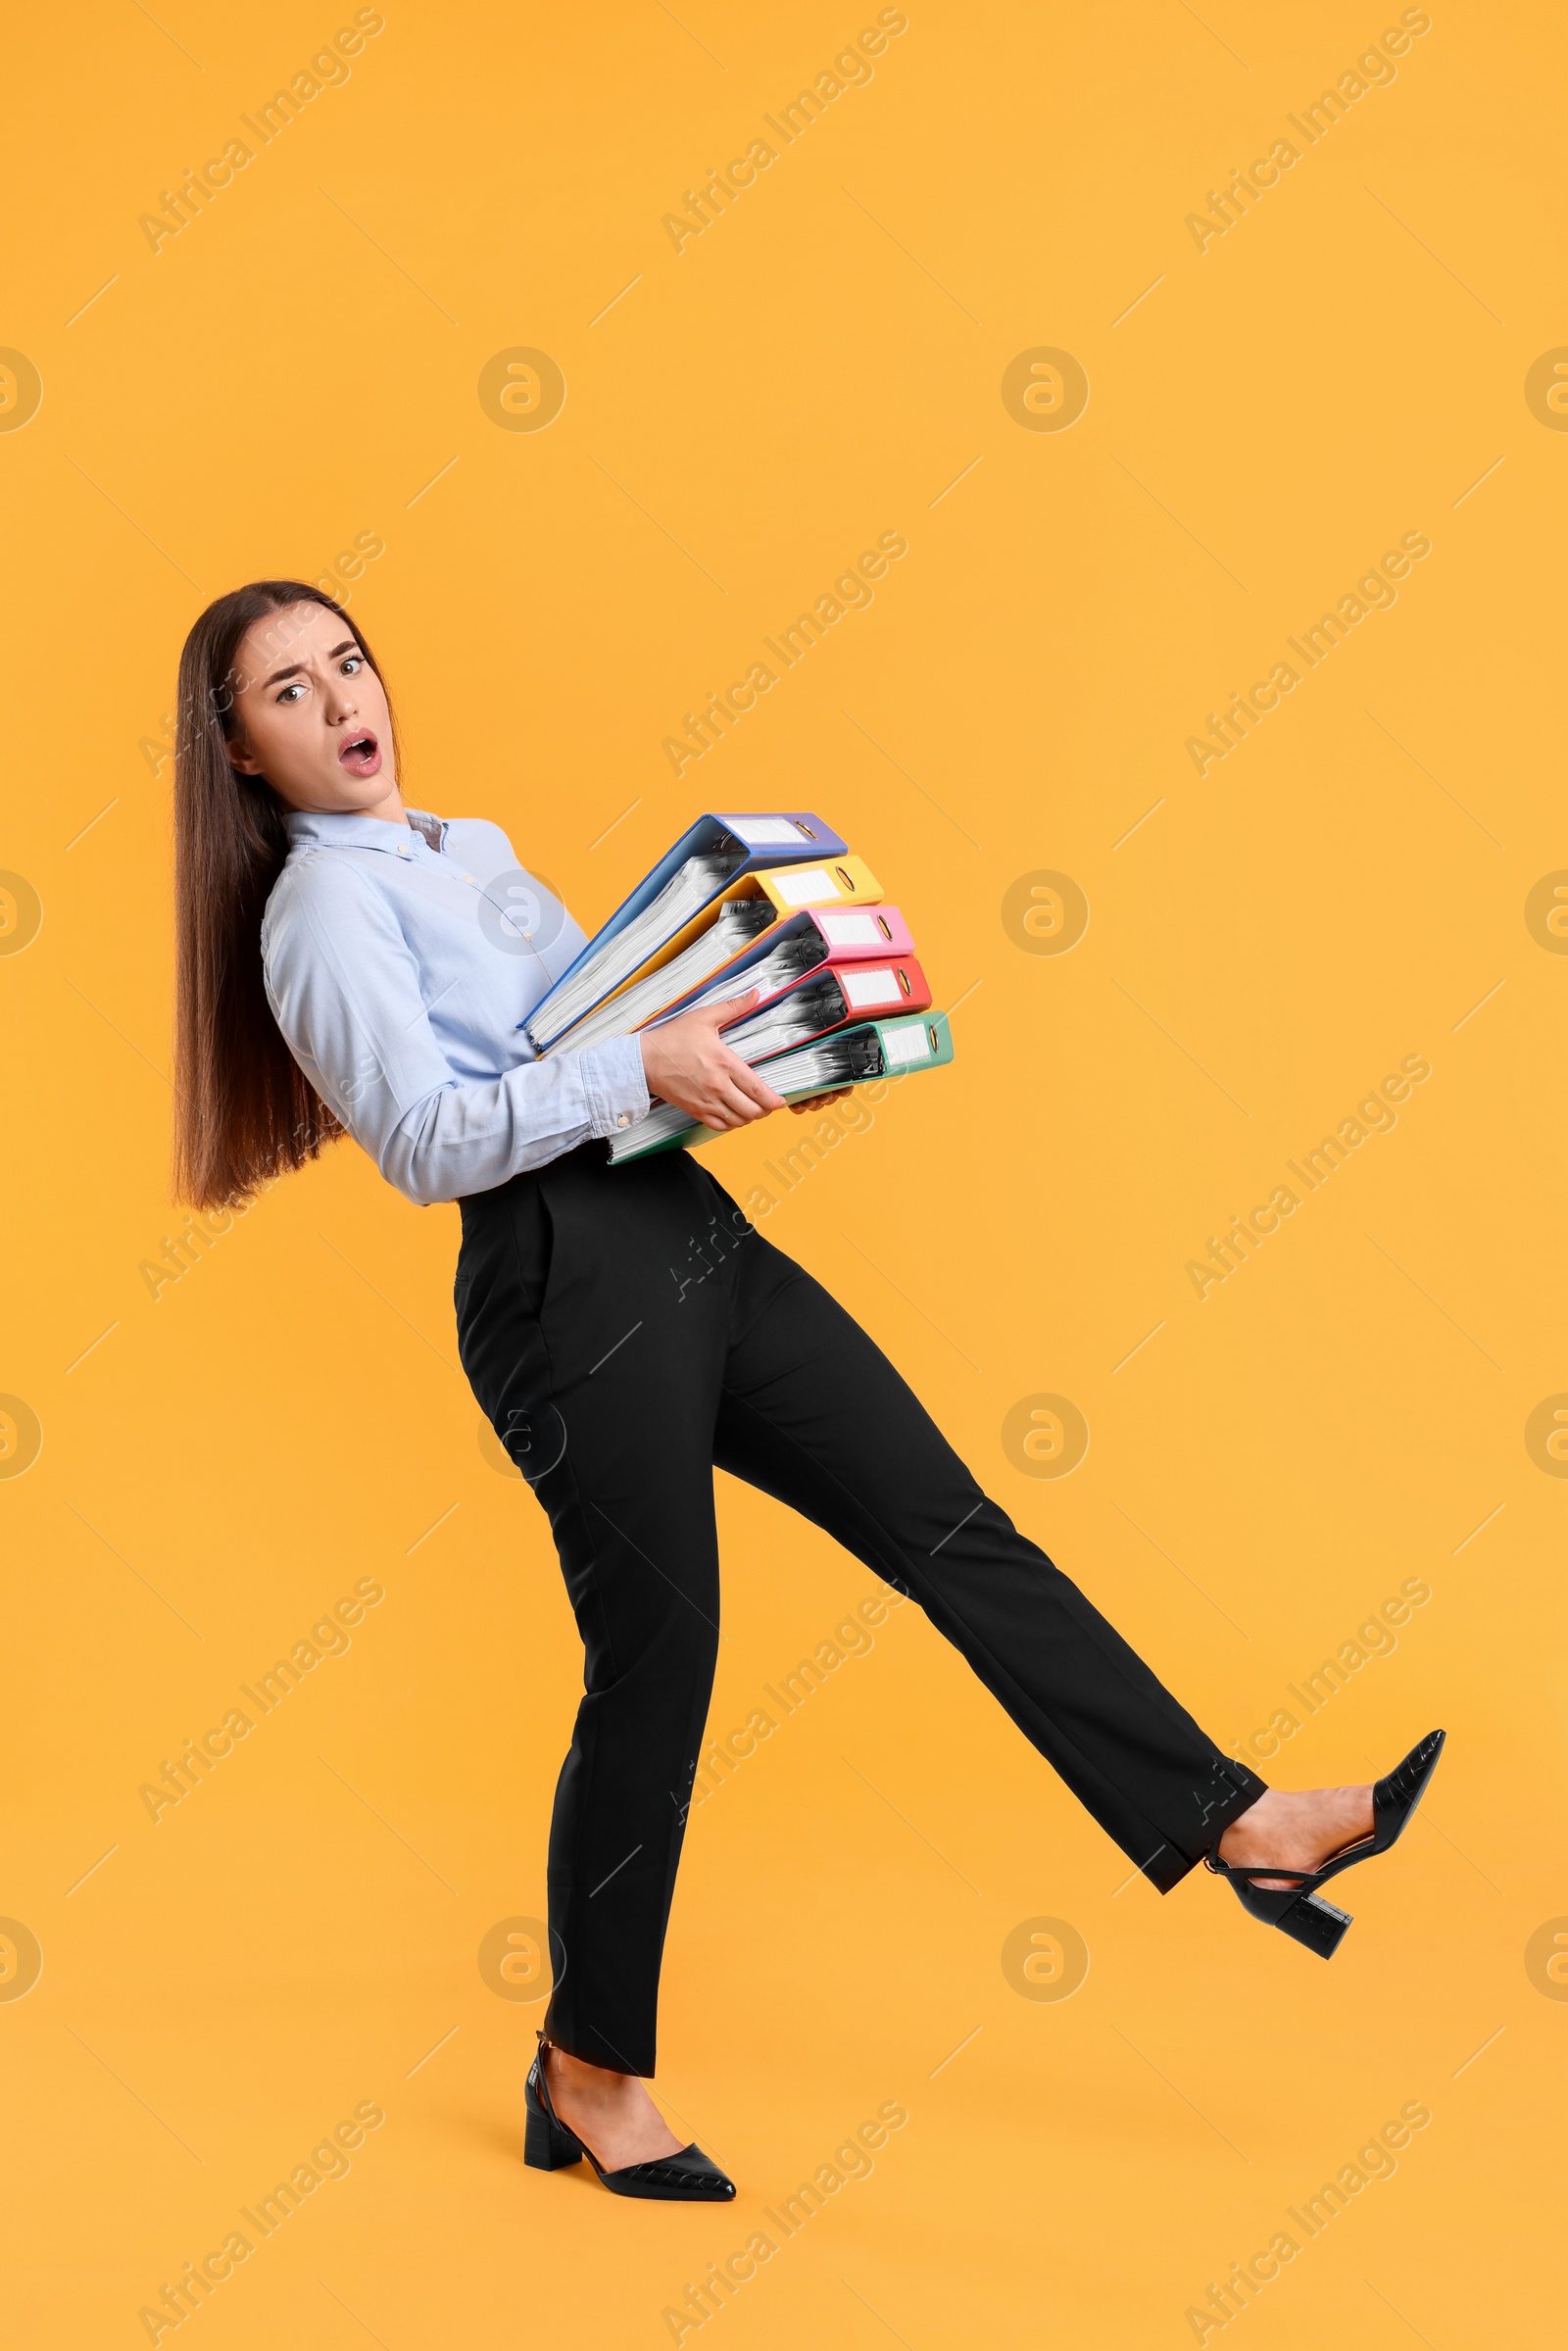 Photo of Shocked woman with folders walking on orange background